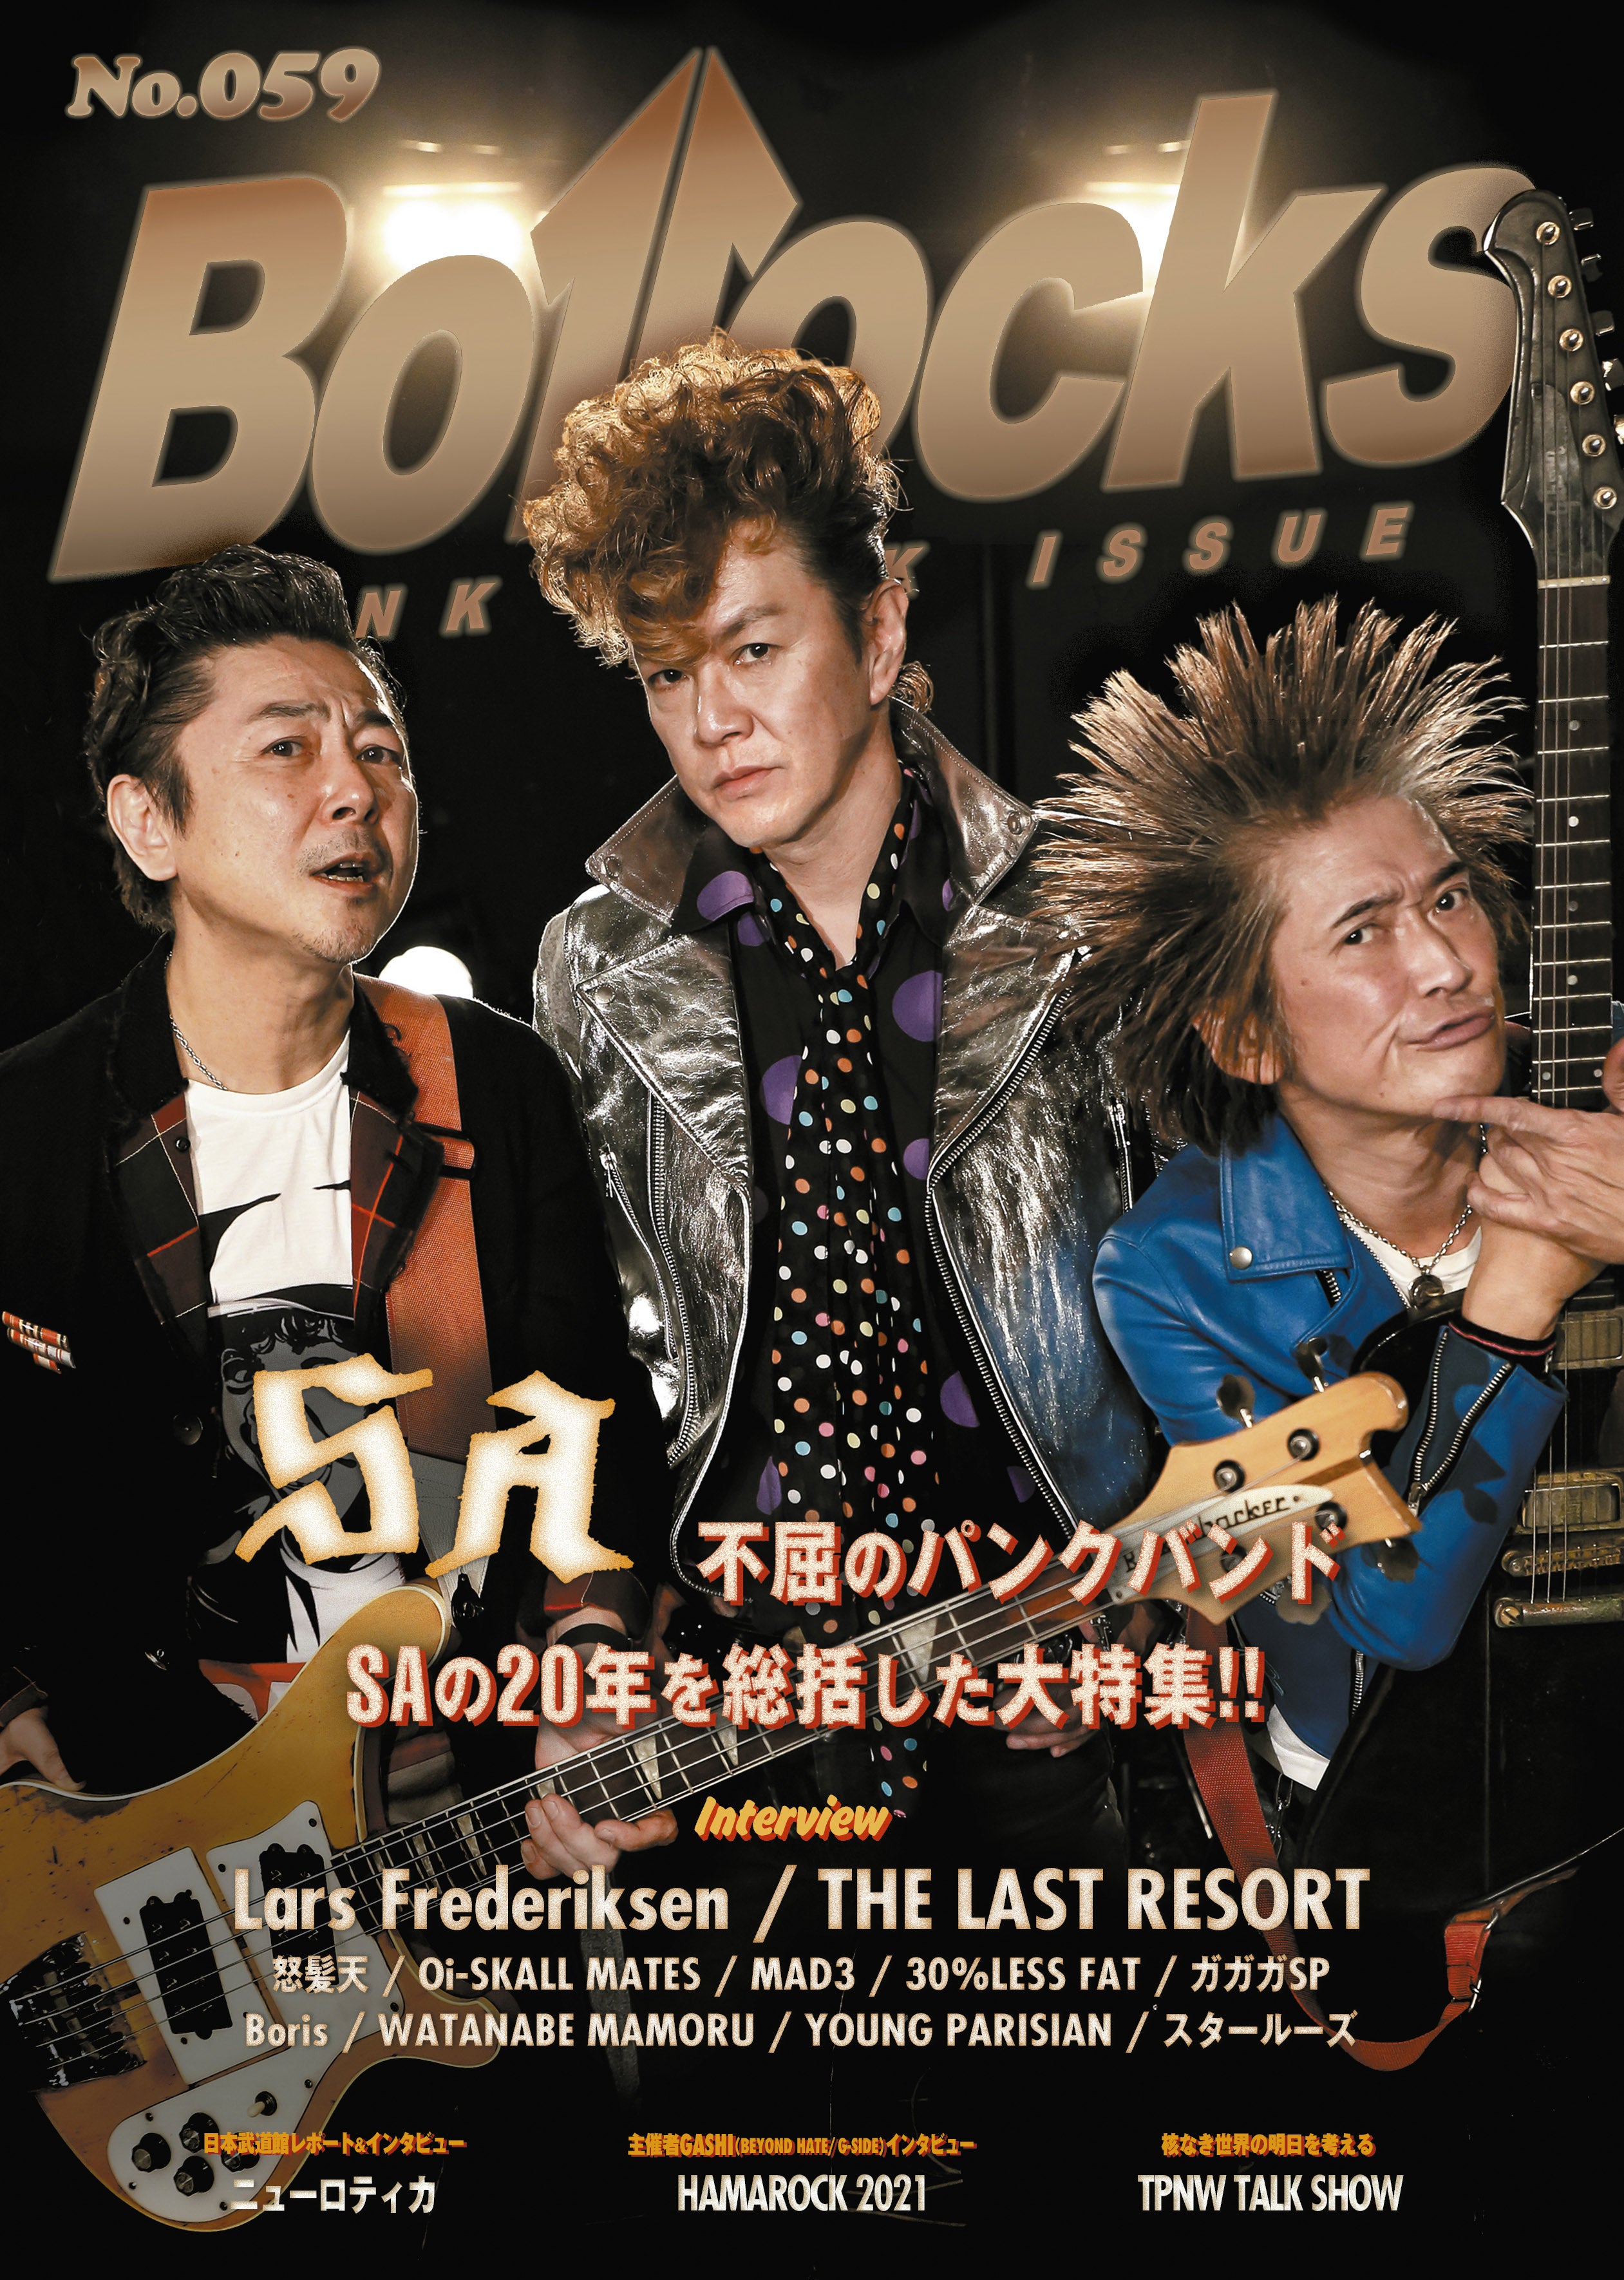 発売 PUNK ROCK ISSUE “Bollocks” No. 予約受付中